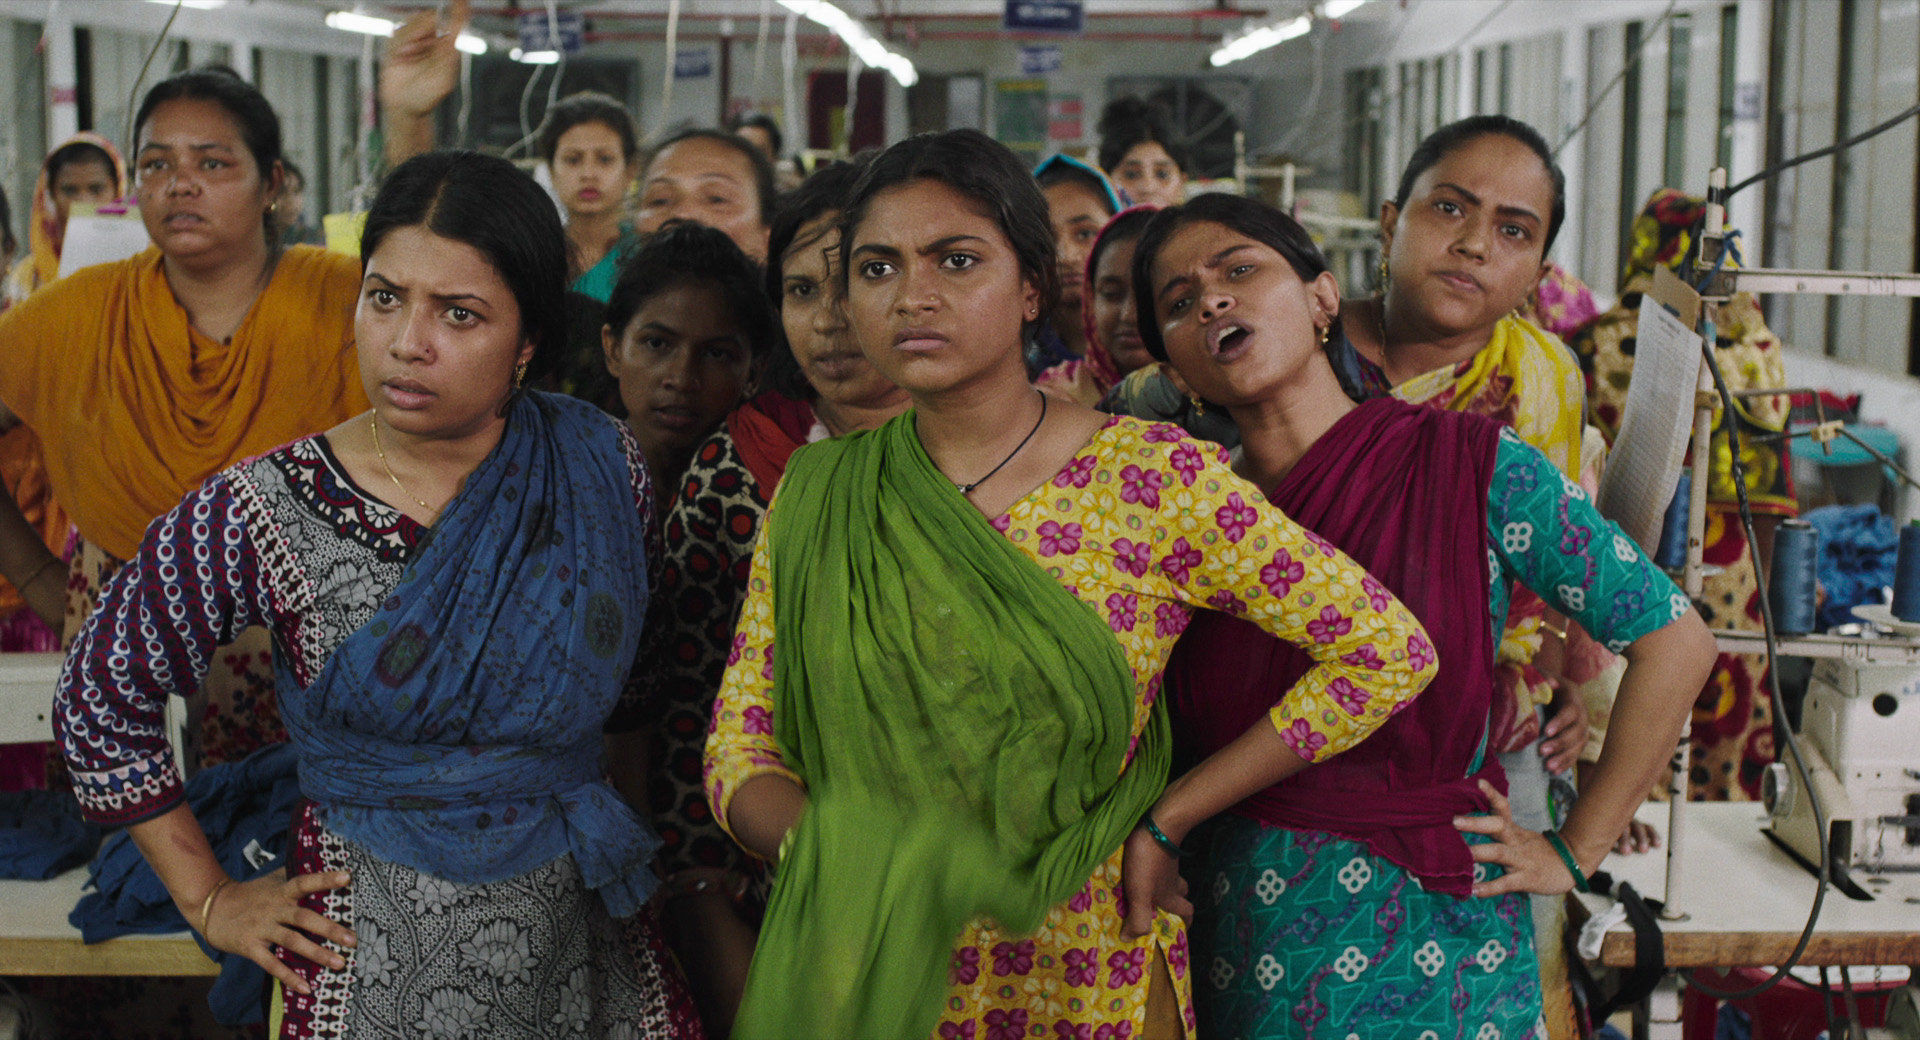 縫製工場の過酷な労働環境と低賃金で働く女性の実話に基づく物語『メイド・イン・バングラデシュ』予告編が完成